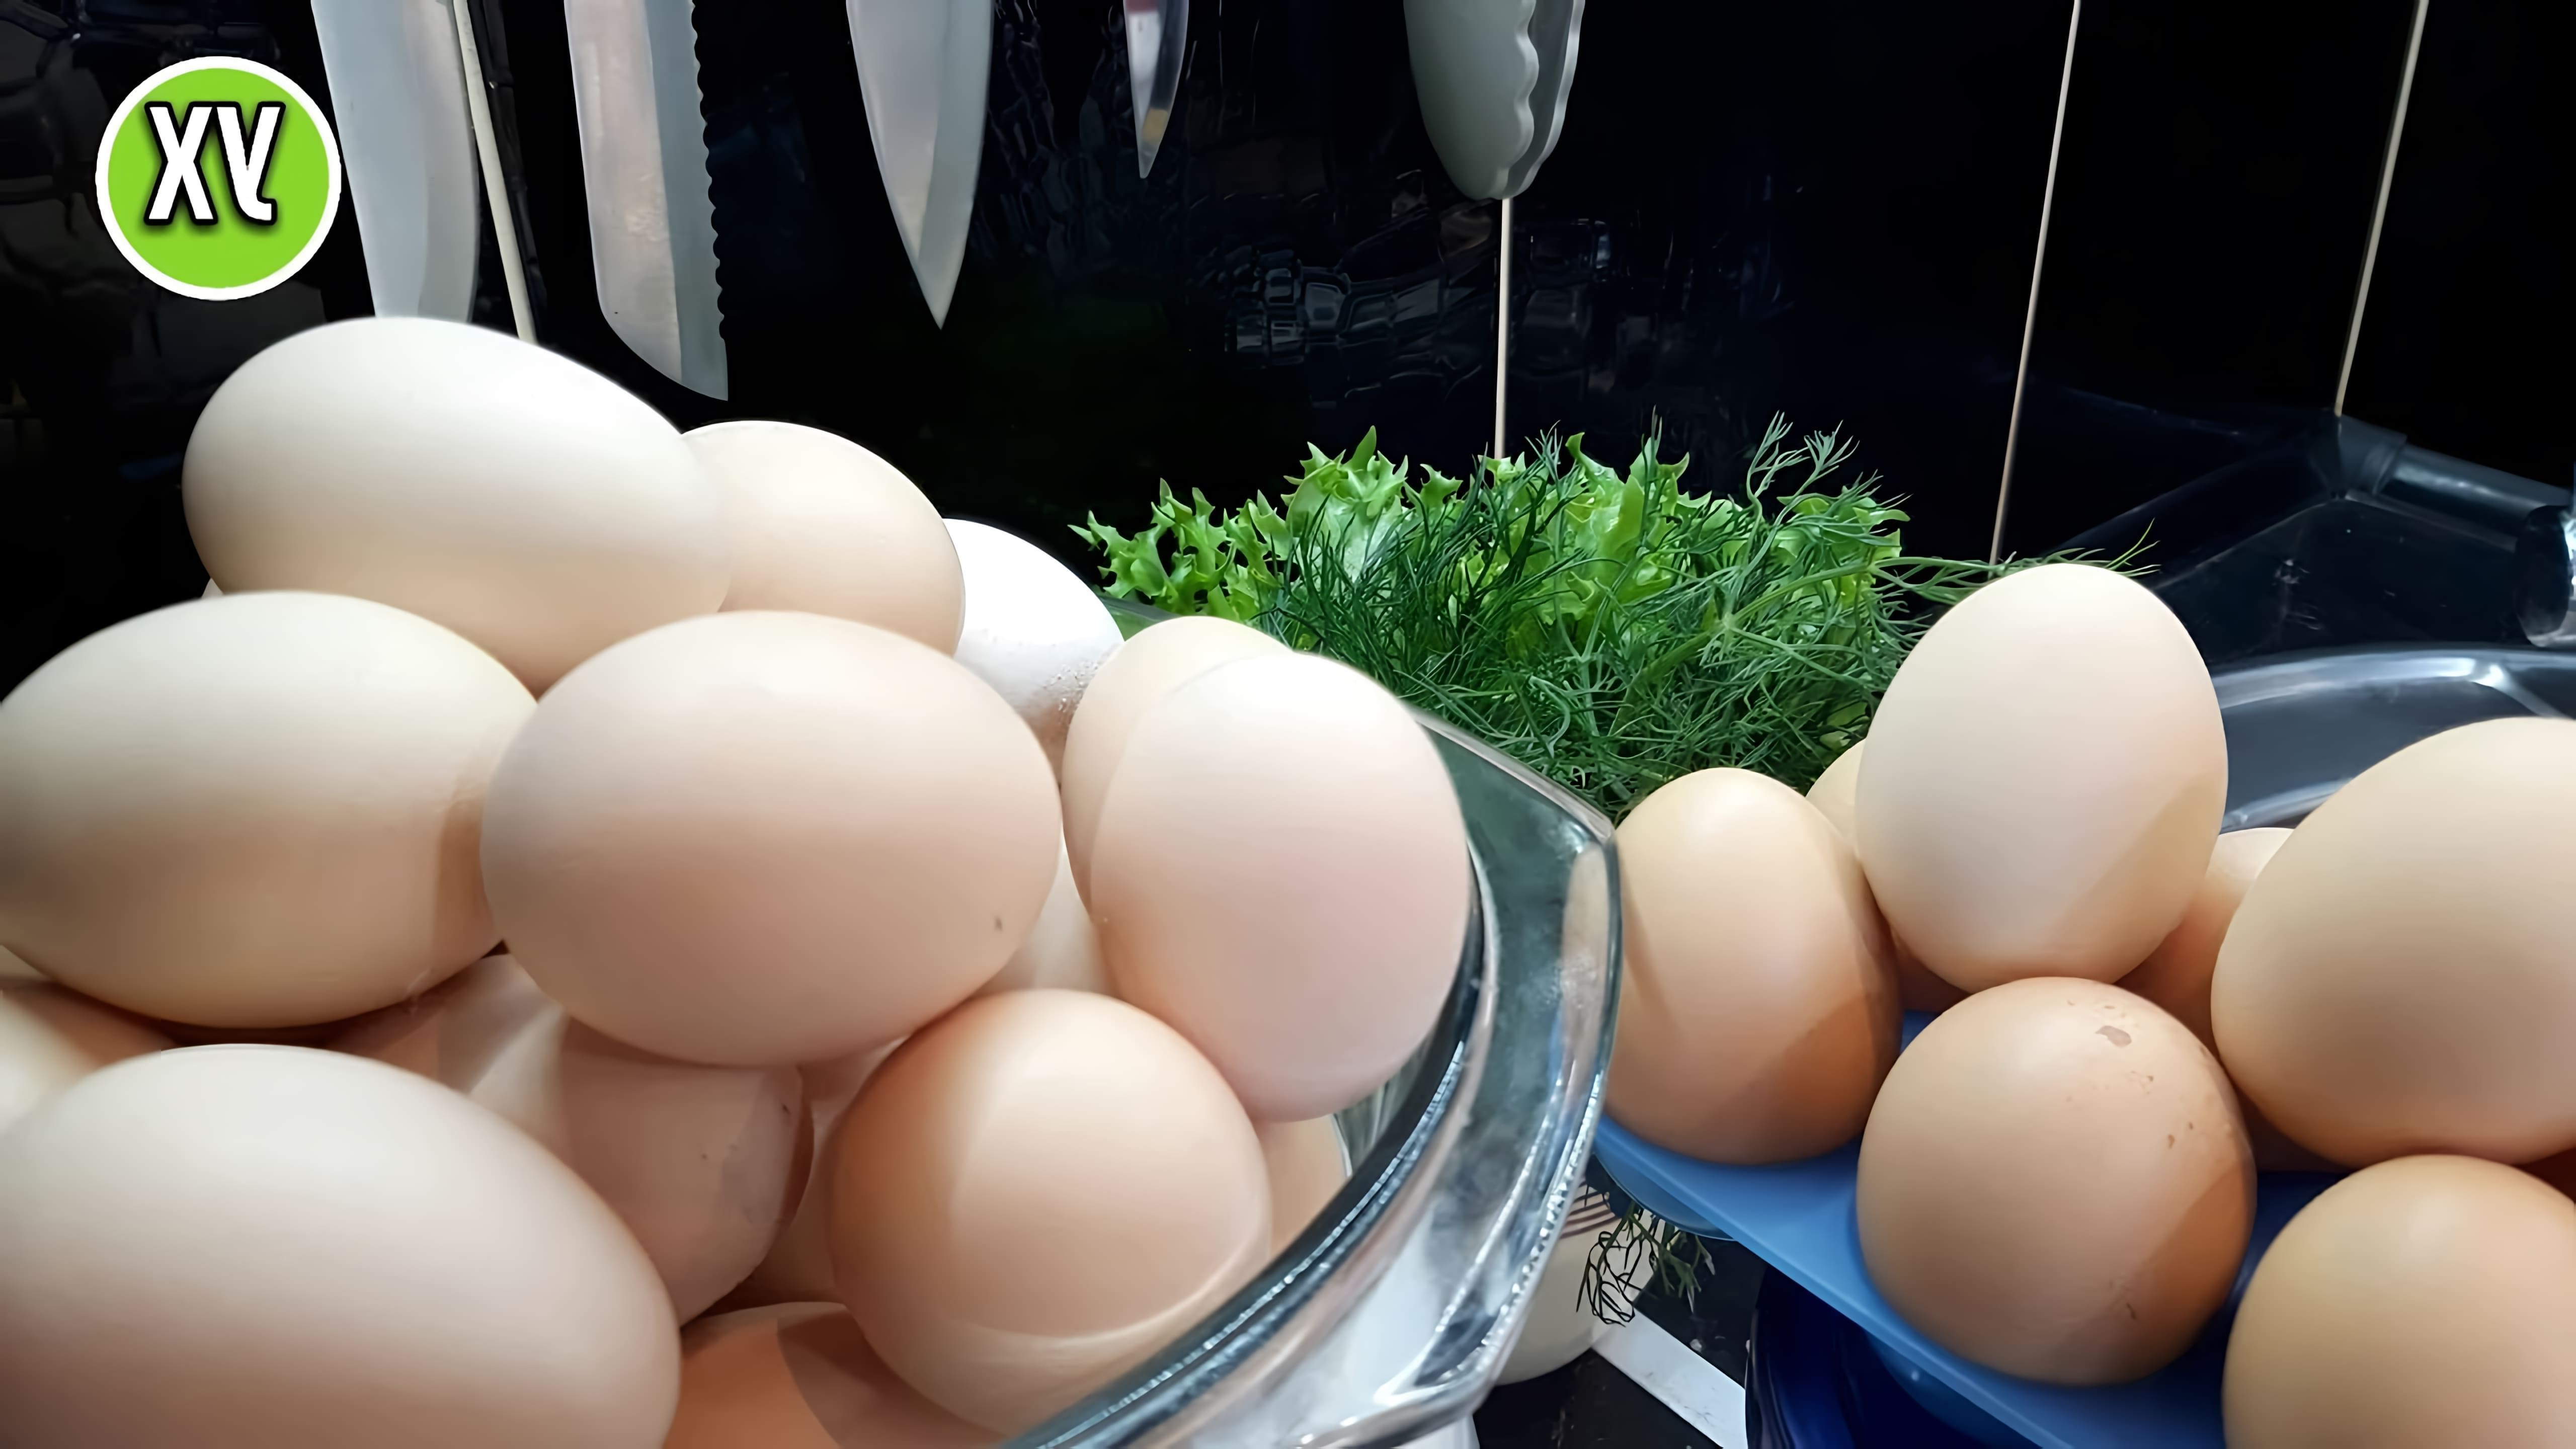 В этом видео показаны три рецепта из яиц: омлет из детства, ленивые яйца бенедикт под соусом и деревенская яичница